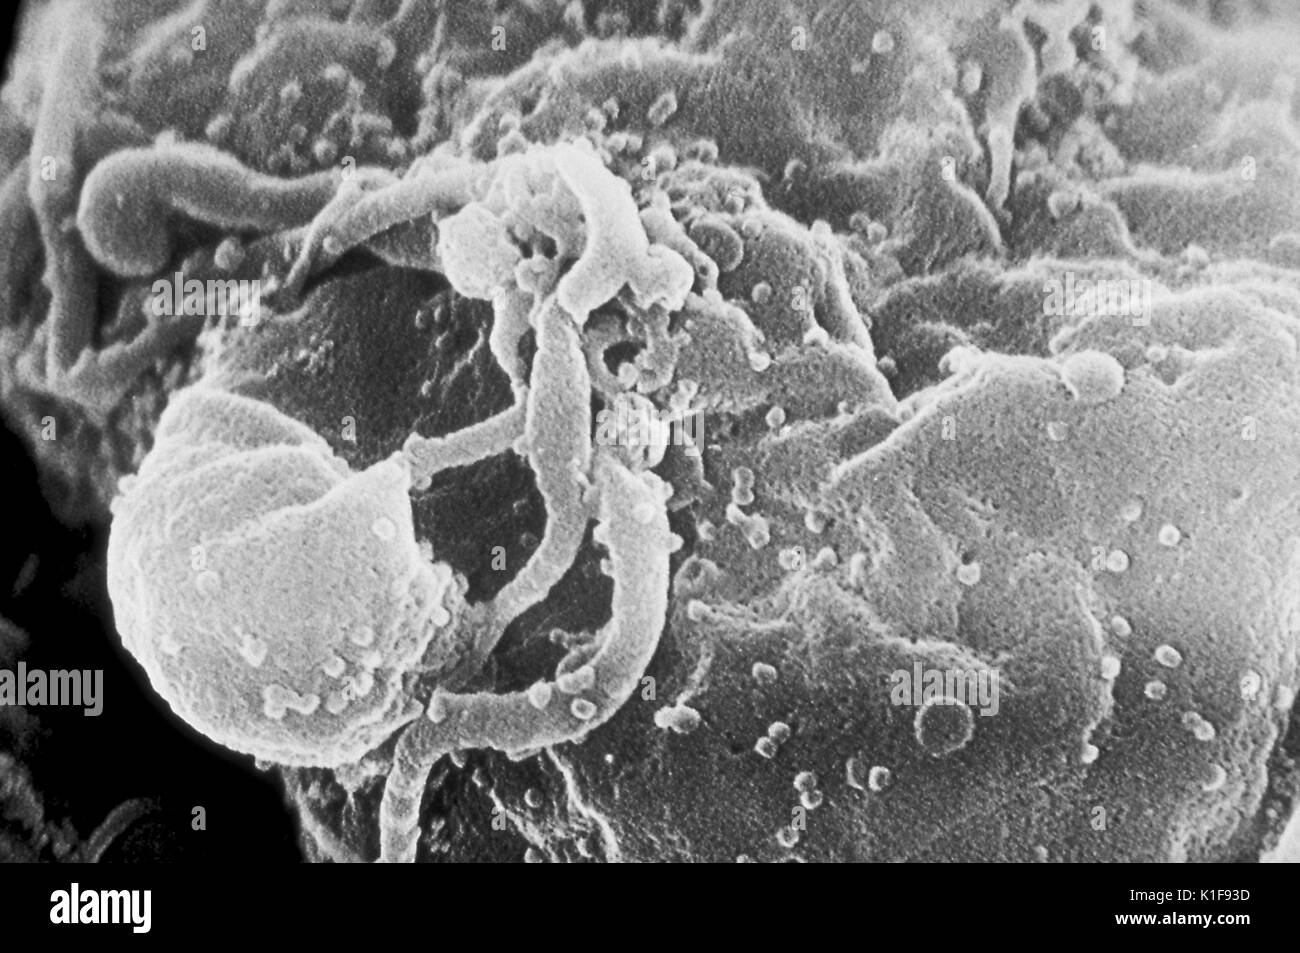 Micrografia elettronica a scansione di HIV-1 virioni germogliando da un linfocita coltivato. Vedere PHIL 10000 per una vista colorato di questa immagine, e Phil 14270, per una versione in bianco e nero sia visibile a magnigication inferiore. Più round protuberanze sulla superficie cellulare rappresentano siti di assemblaggio e in erba di virioni. Immagine cortesia CDC/C. Orafo, P. Feorino, E. L. Palmer, W. R. McManus. 1974. Foto Stock